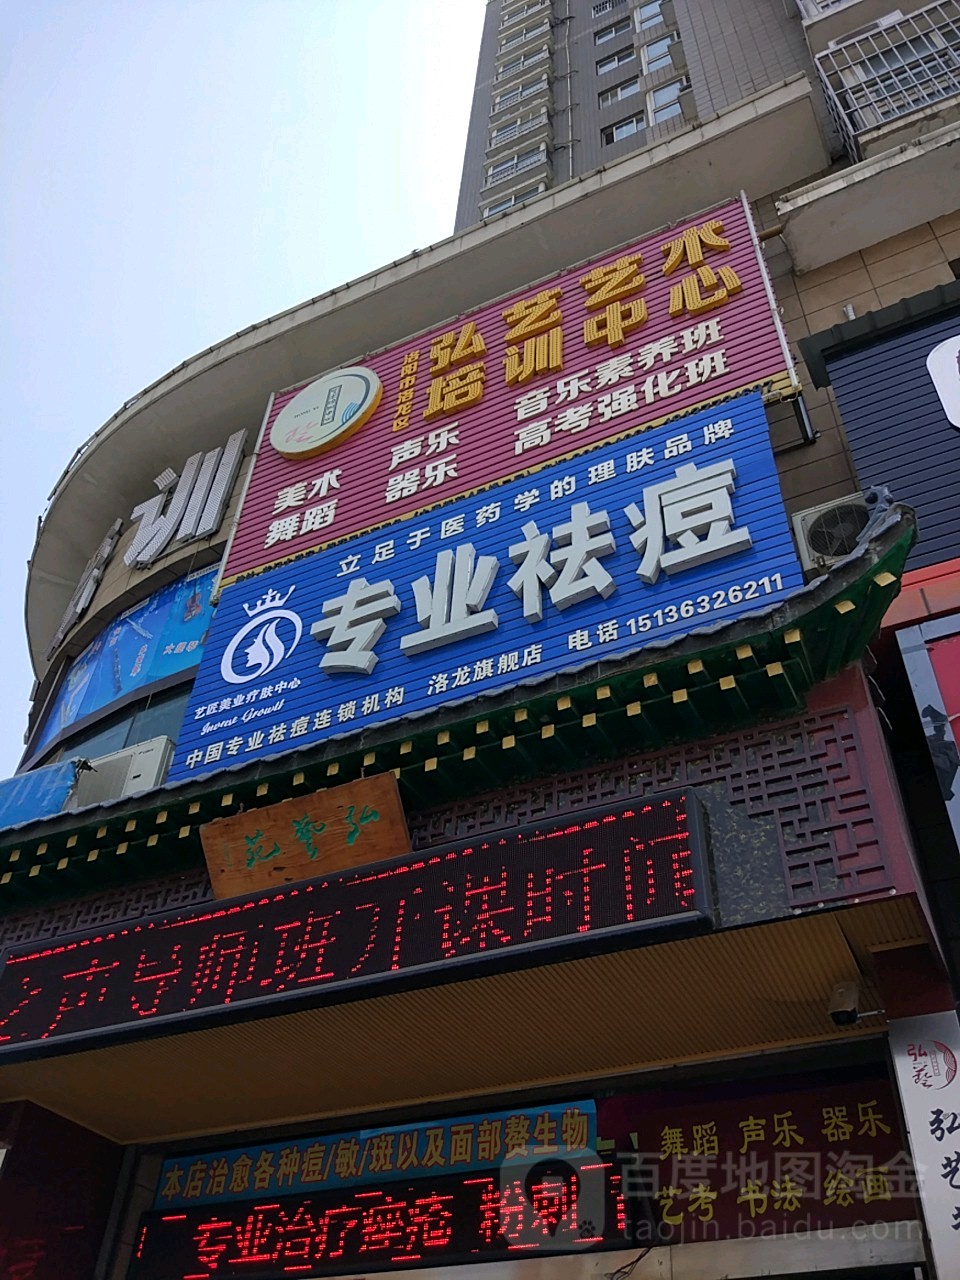 弘藝藝術培訓中心(洛龍區太康路店)